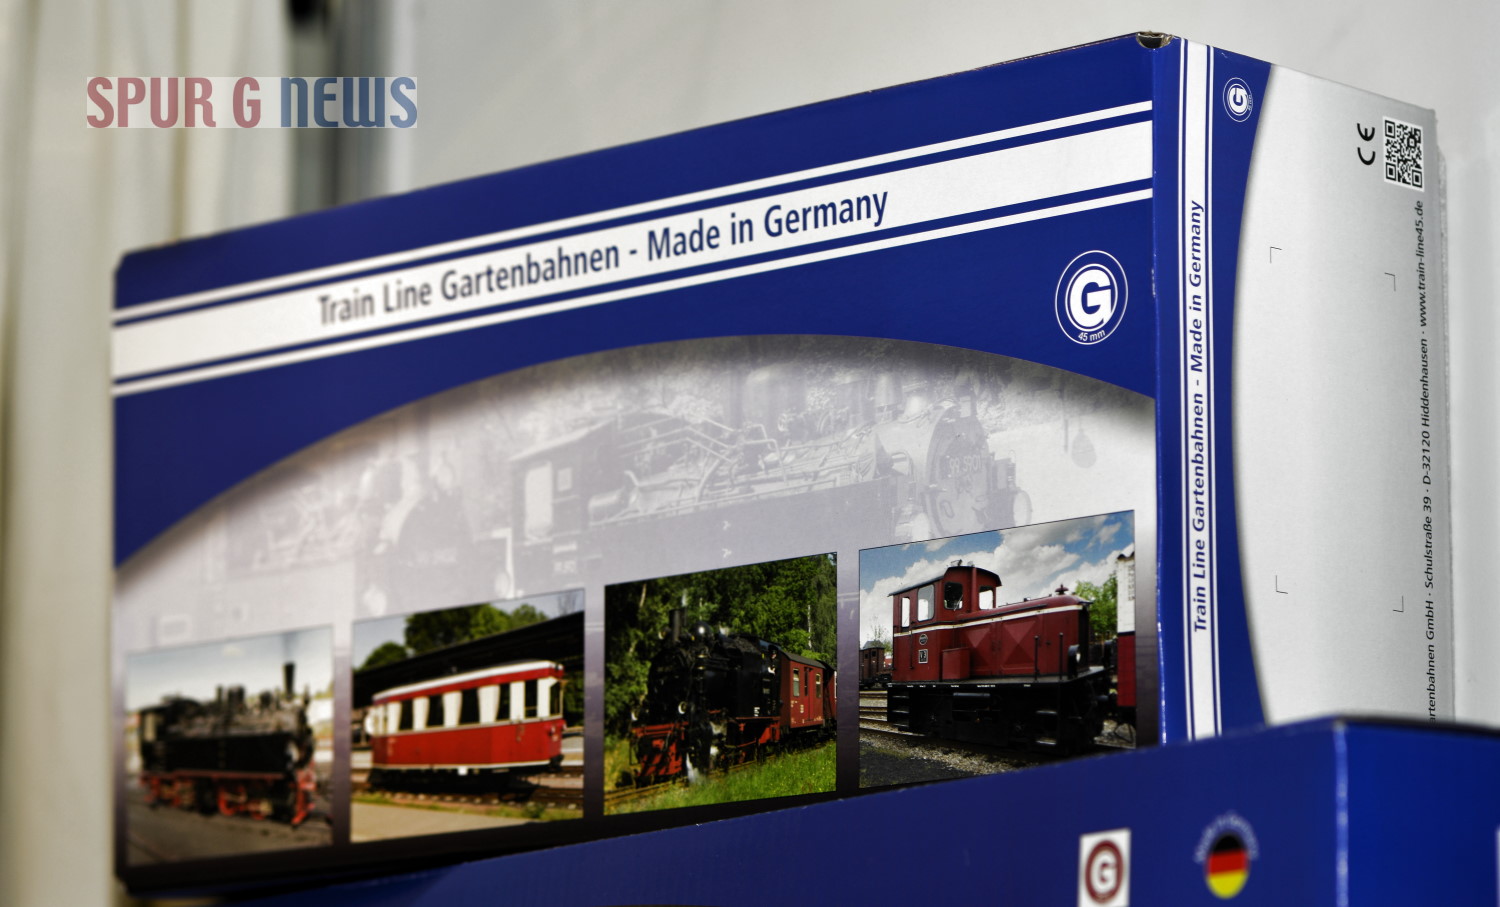 Karton fr Lokomotiven wie der Harz-Mallet von Train Line Gartenbahnen. 